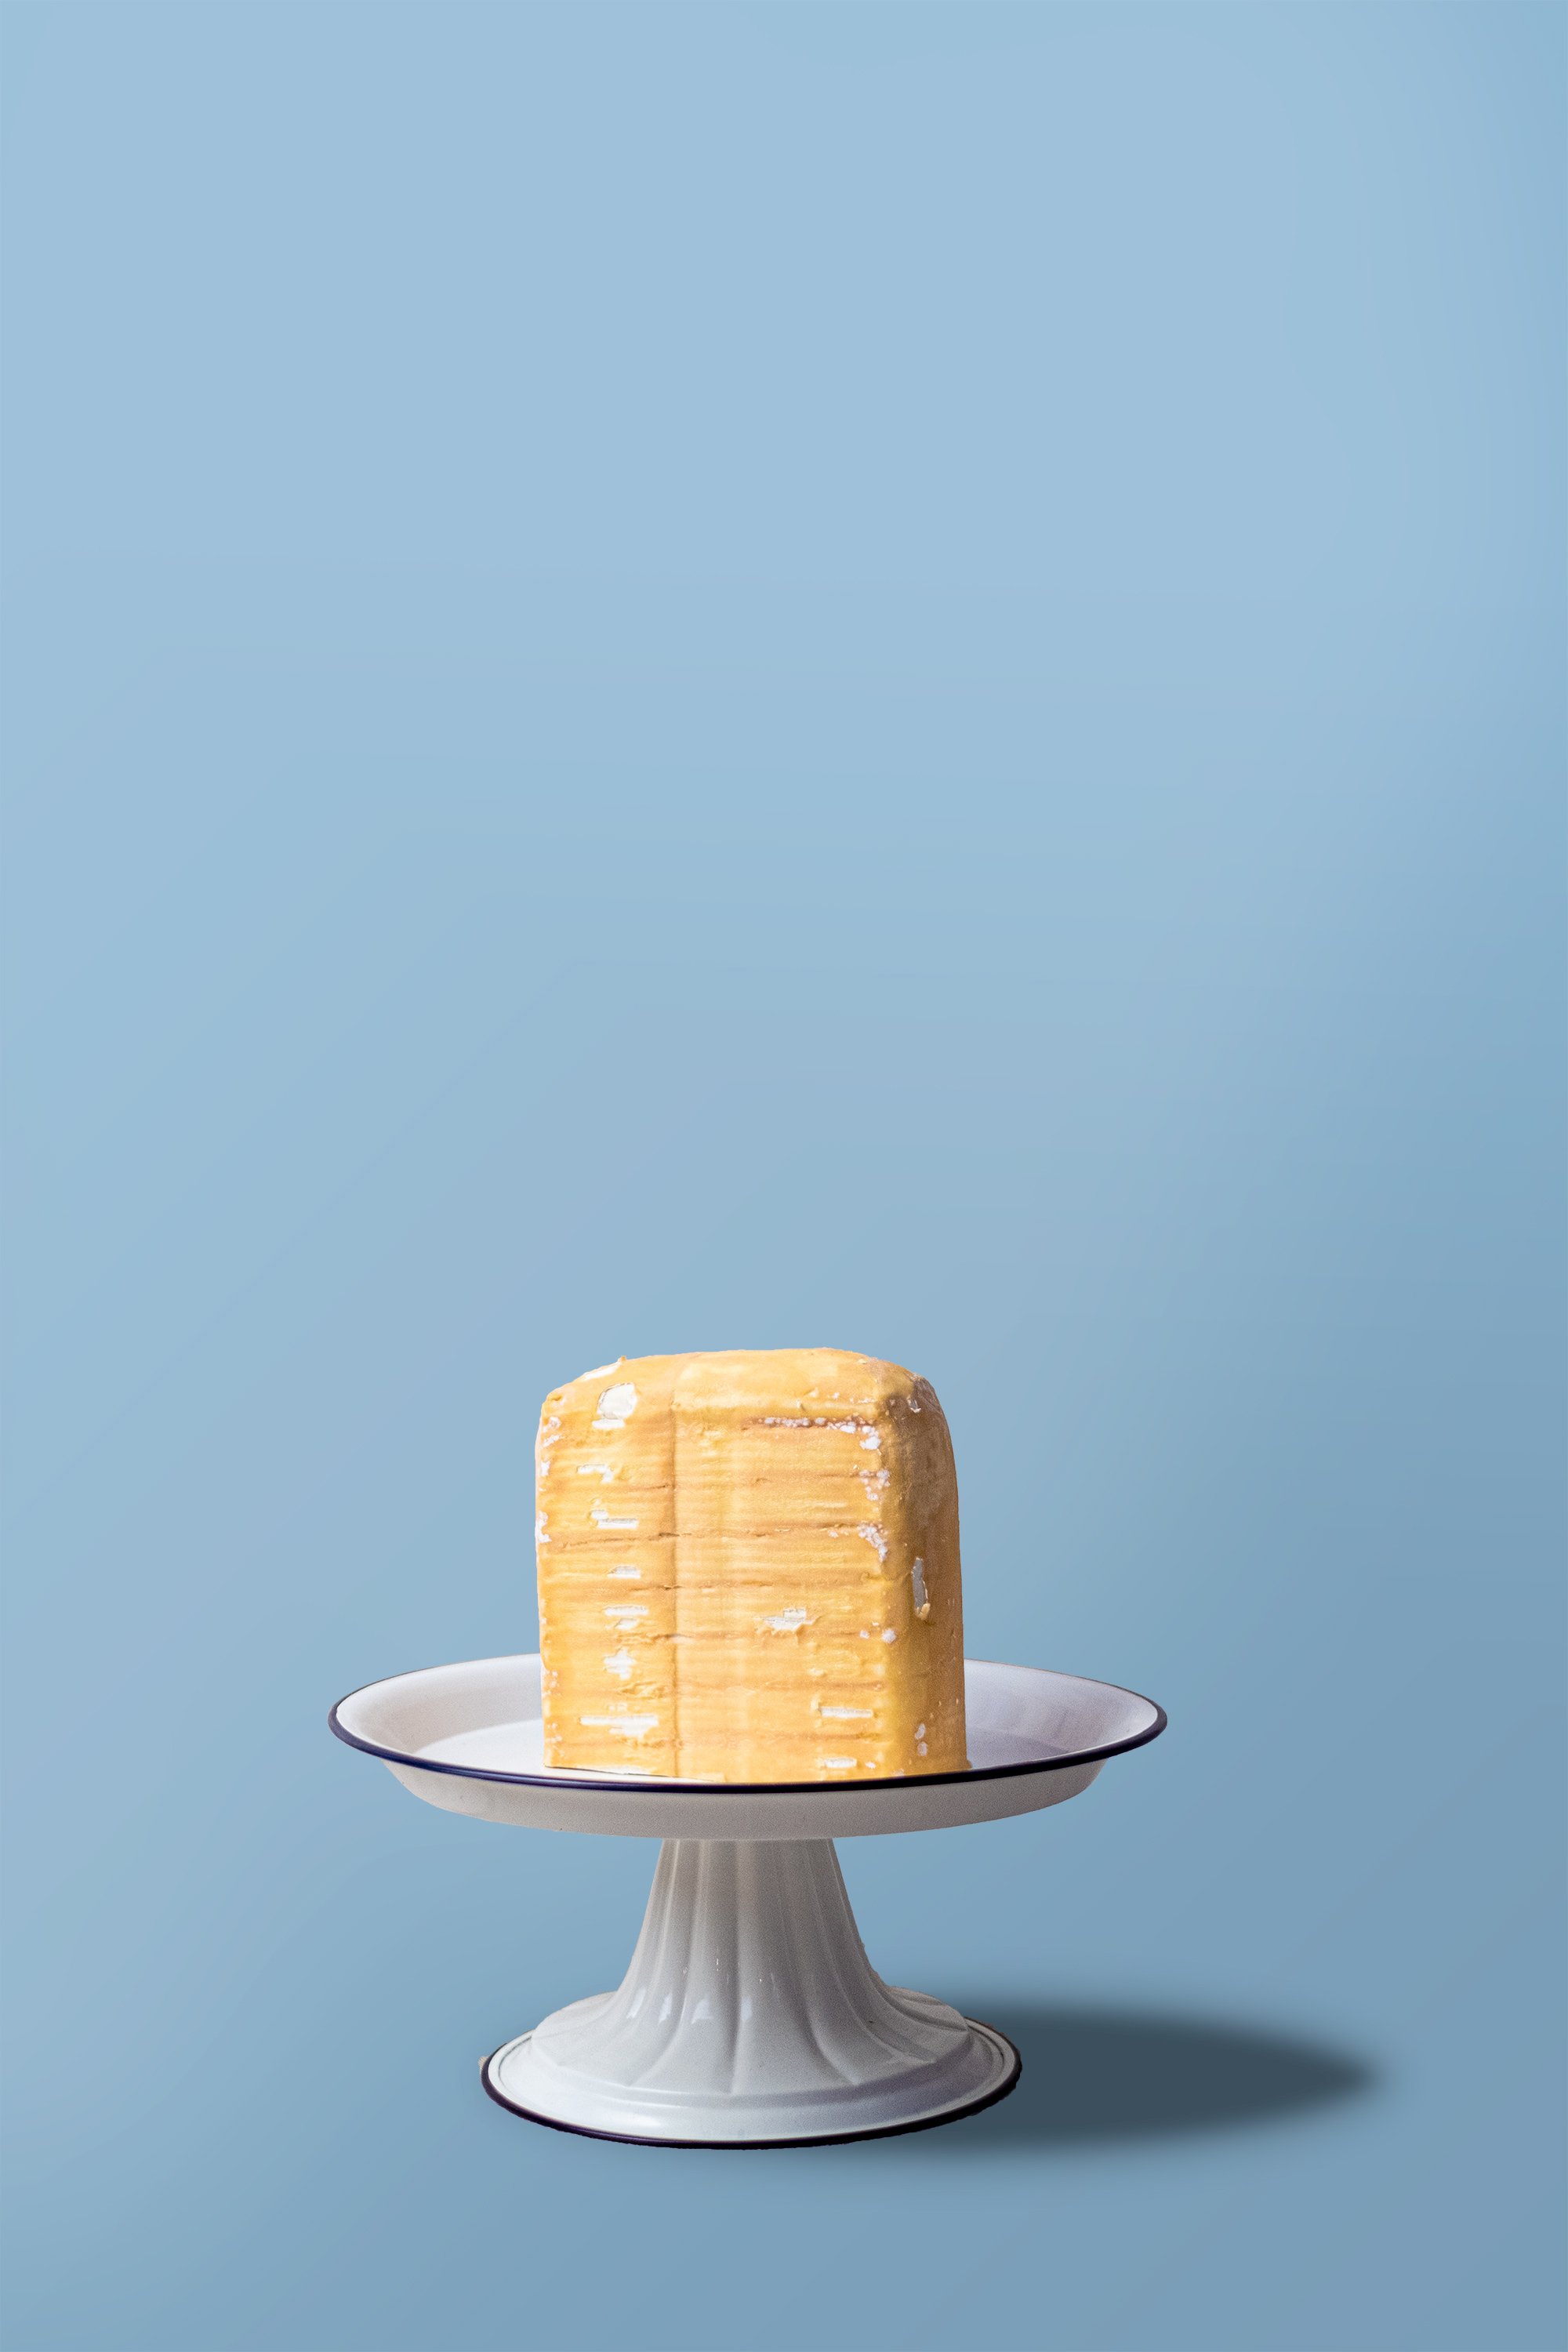  A brick of Eligo on a cake stand 